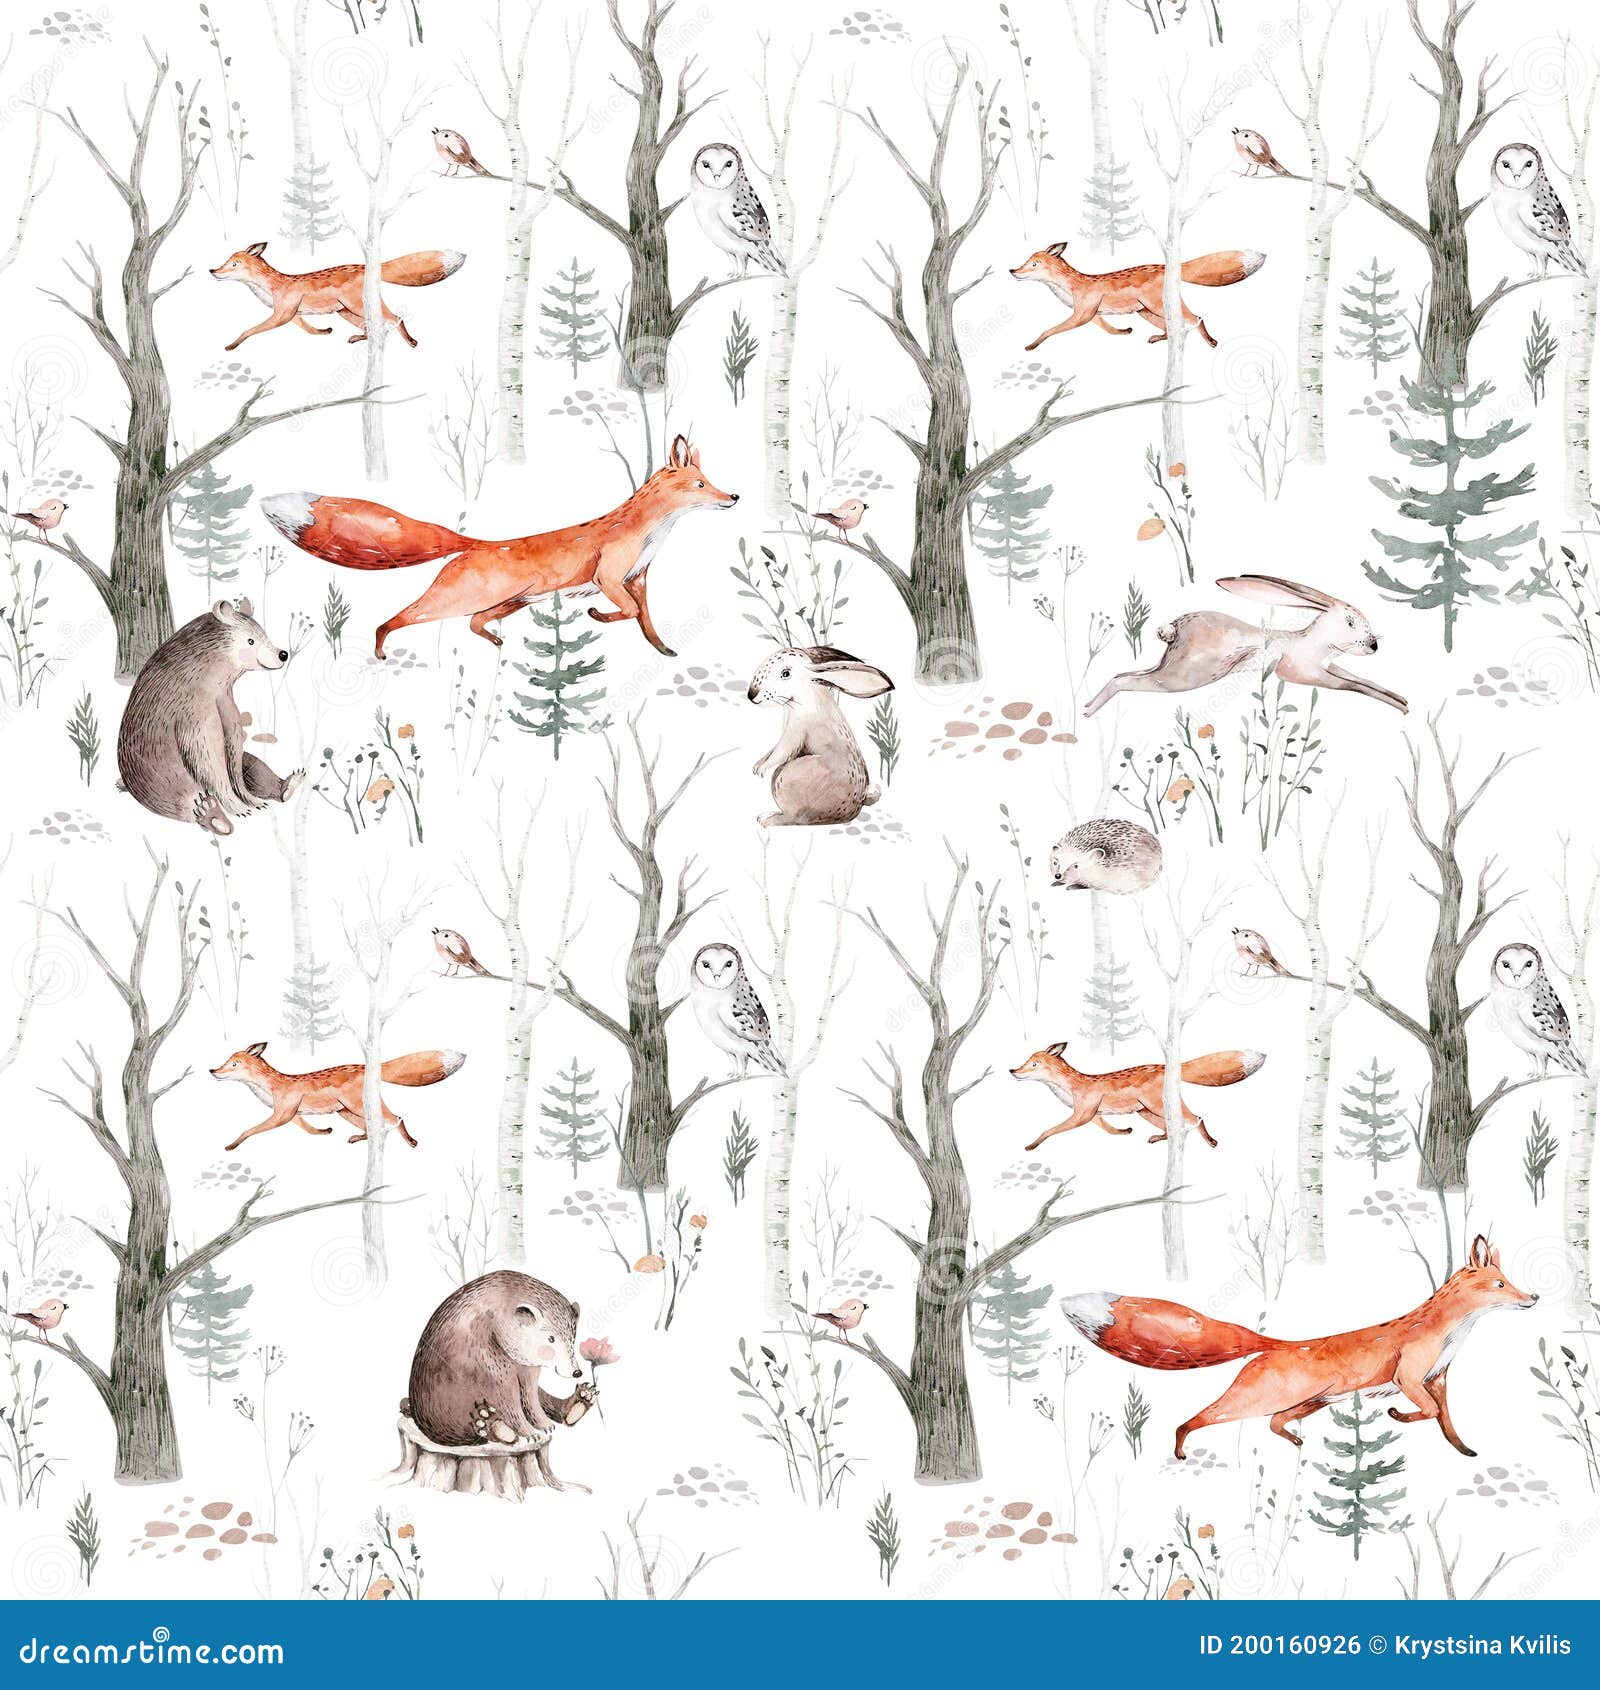 Arthouse Forest Friends Wallpaper Mint Green Fox Bird Animals Kids Nursery